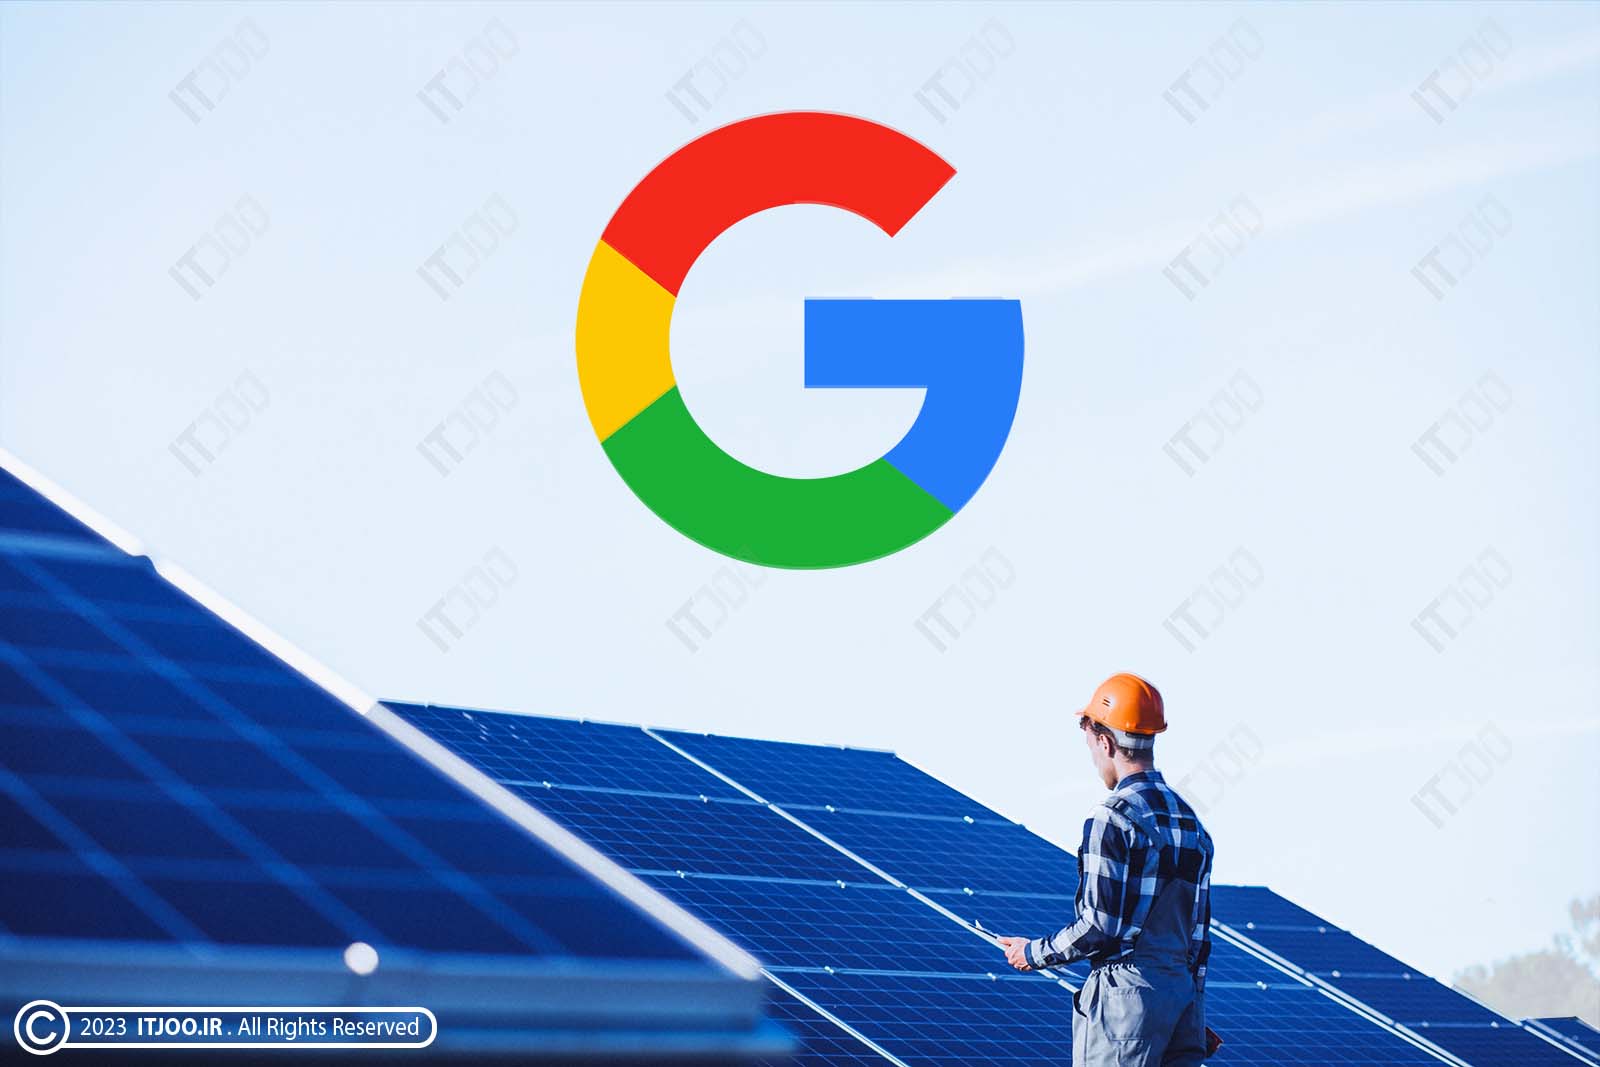 پنل برق خورشیدی گوگل برای دیتا سنتر (مرکز داده) - electrical solar panel google datacenter